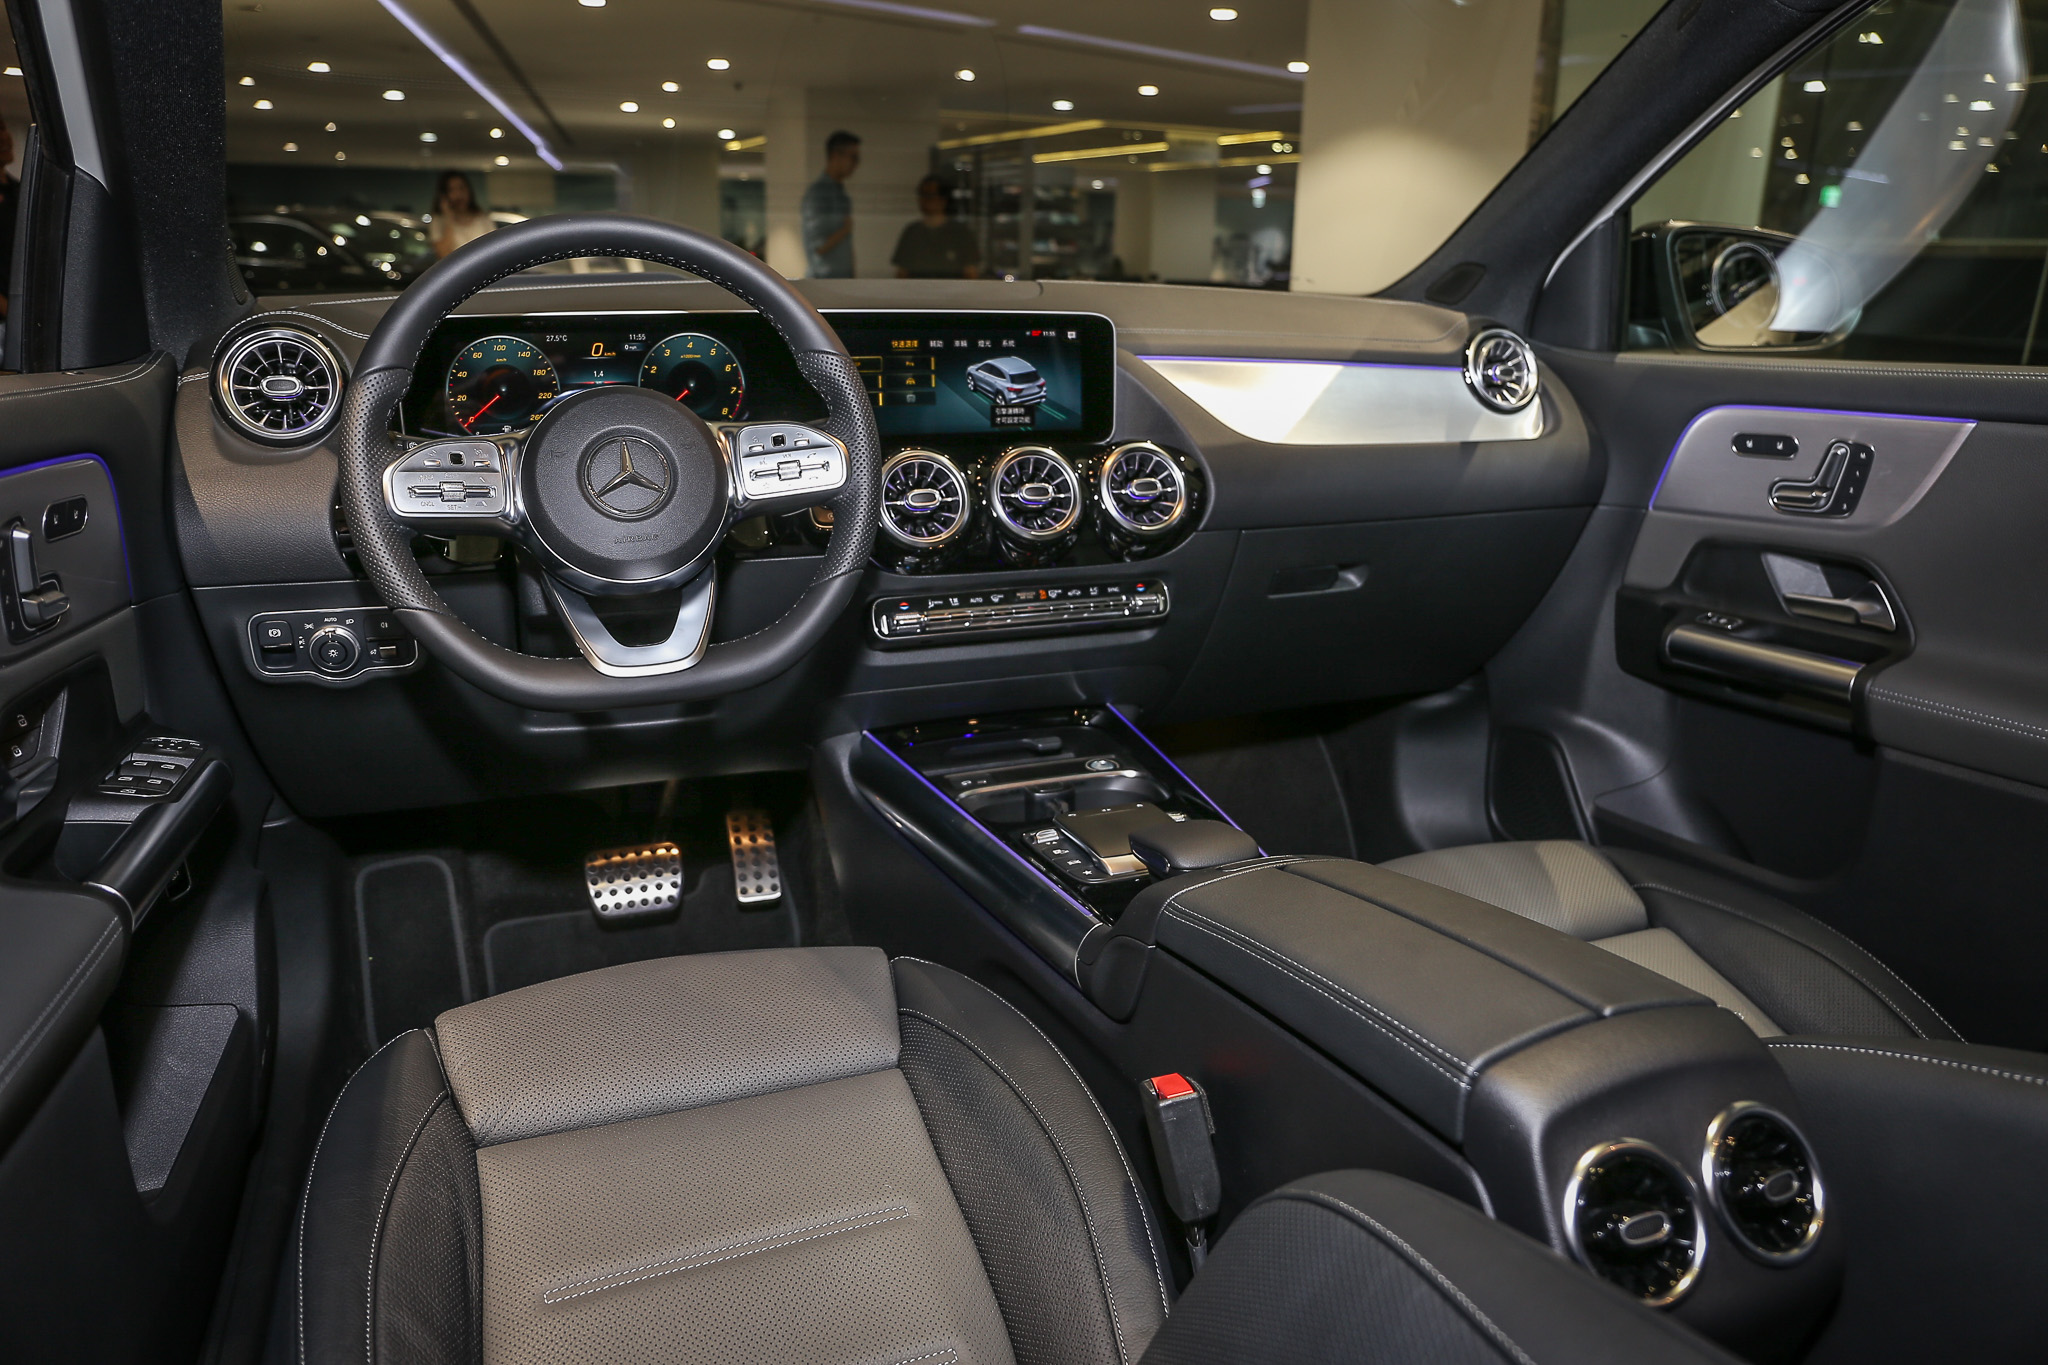 座艙內展現當代 Mercedes-Benz 一貫風格，同樣採用雙 10.25 吋螢幕組成數位儀表與中央觸控螢幕。